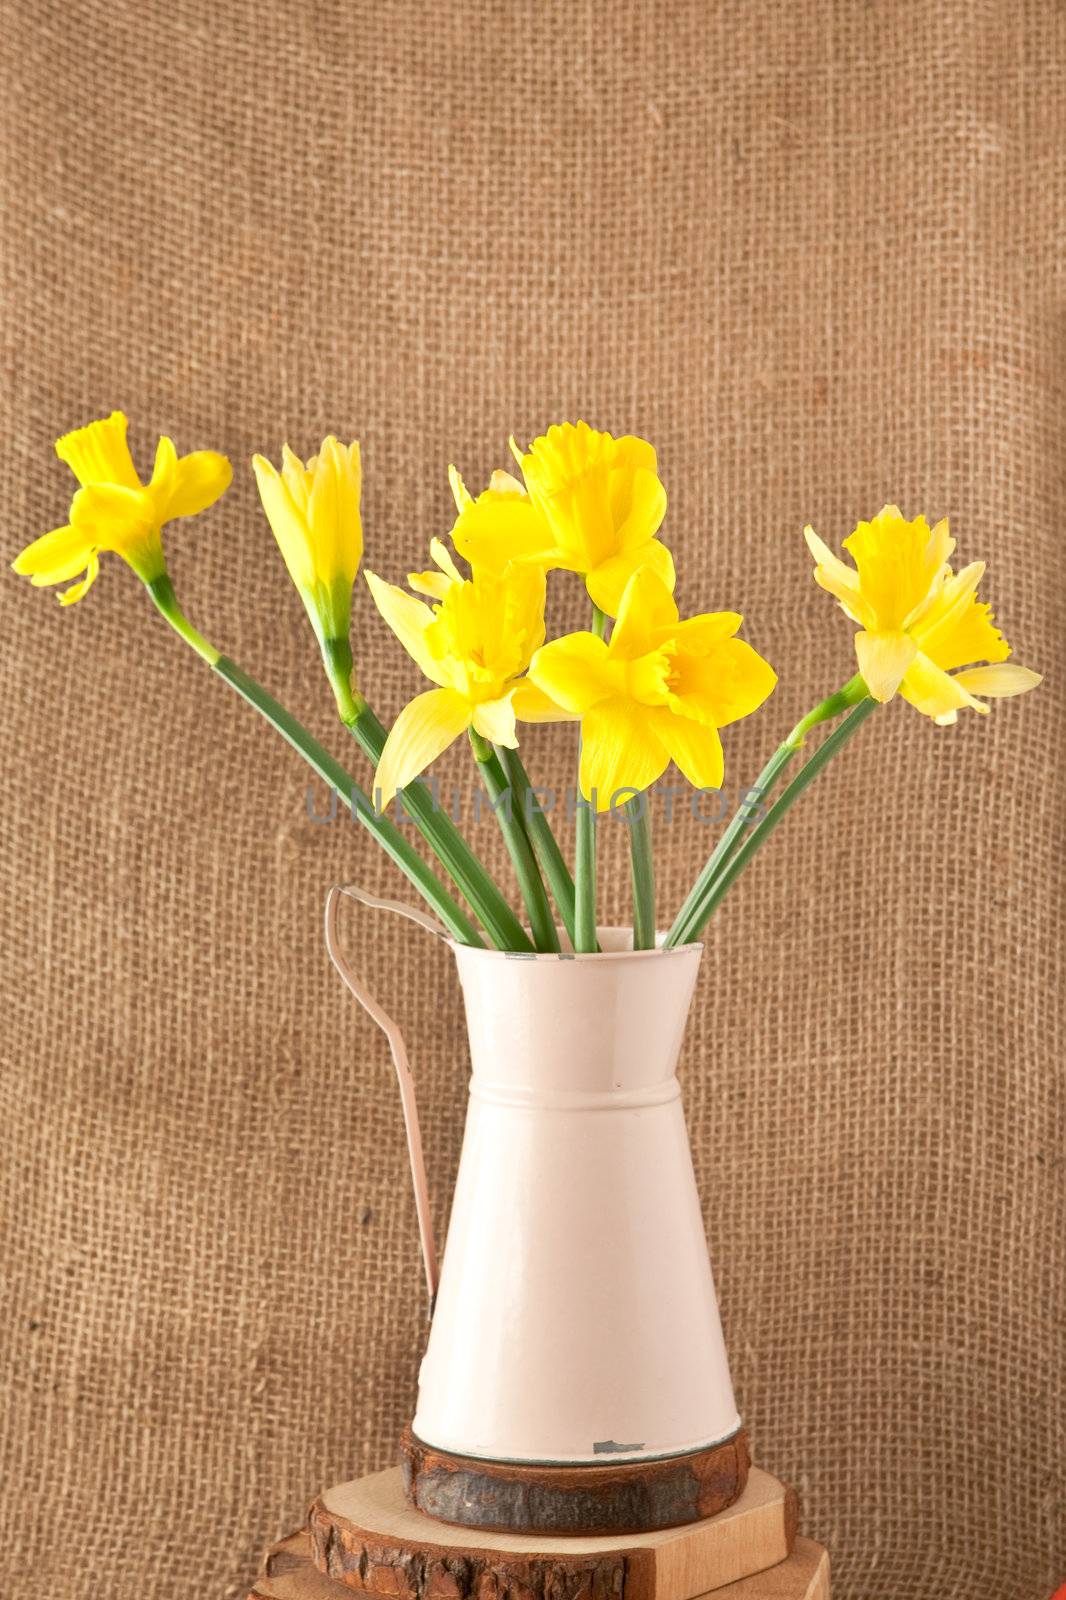 daffodils by trgowanlock